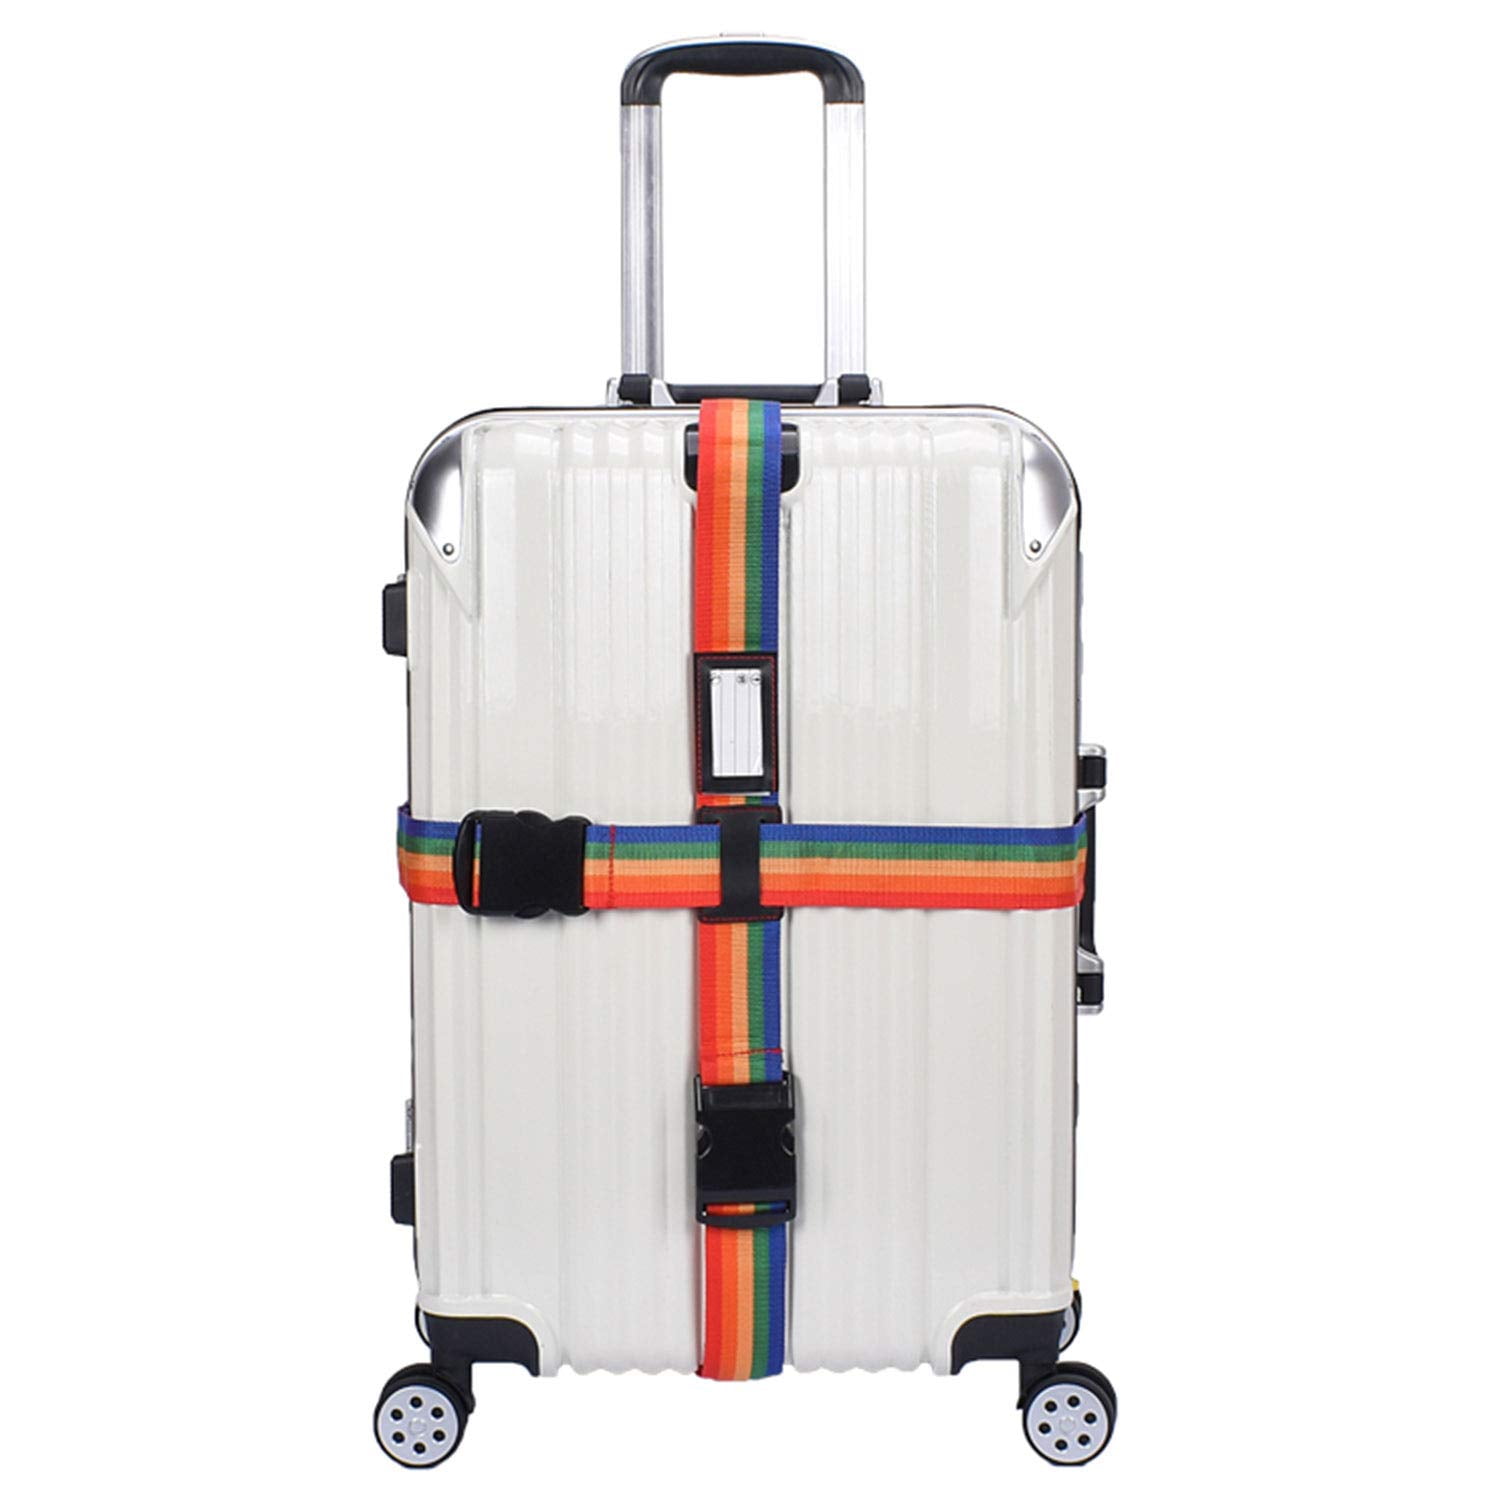 Travel Adjustable Suitcase Luggage Bag Carrier Strap Baggage Belt Blue